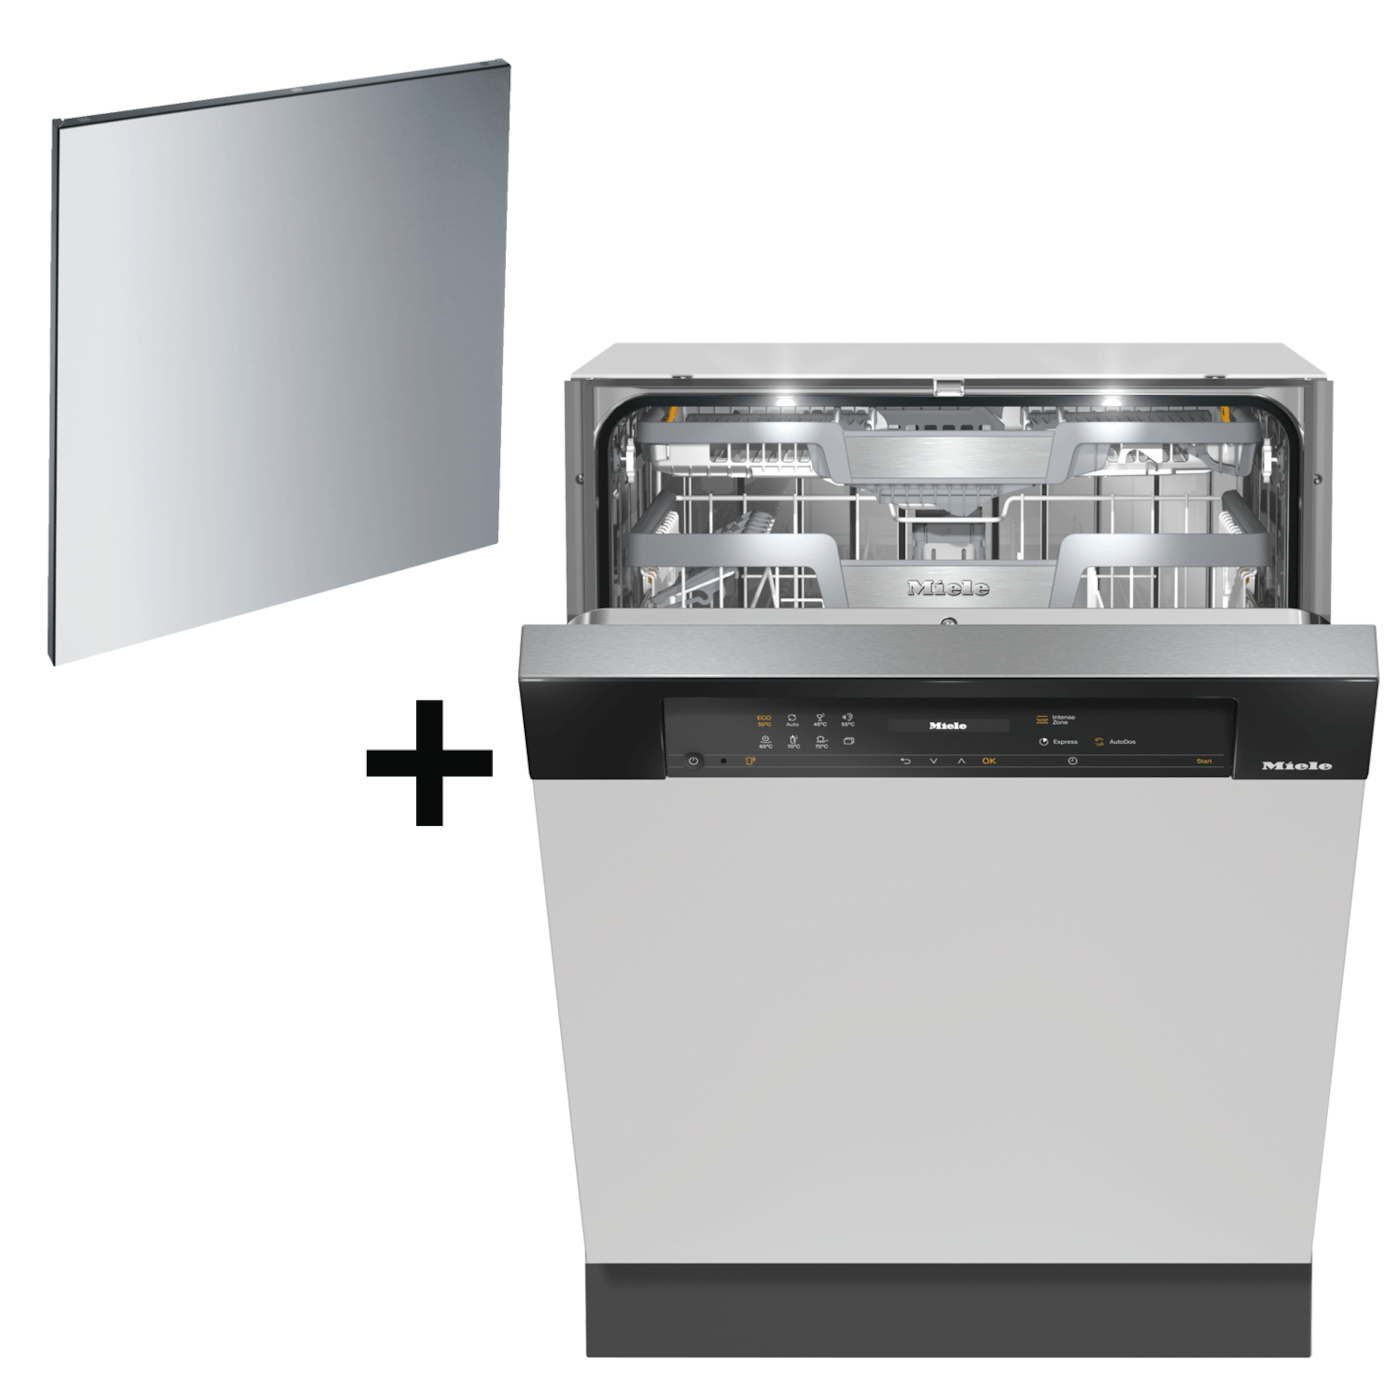 【ドアキットセット】食器洗い機 G 7514 C SCi AutoDos  (ブラック/60CM)(送料27500込) product photo Front View ZOOM